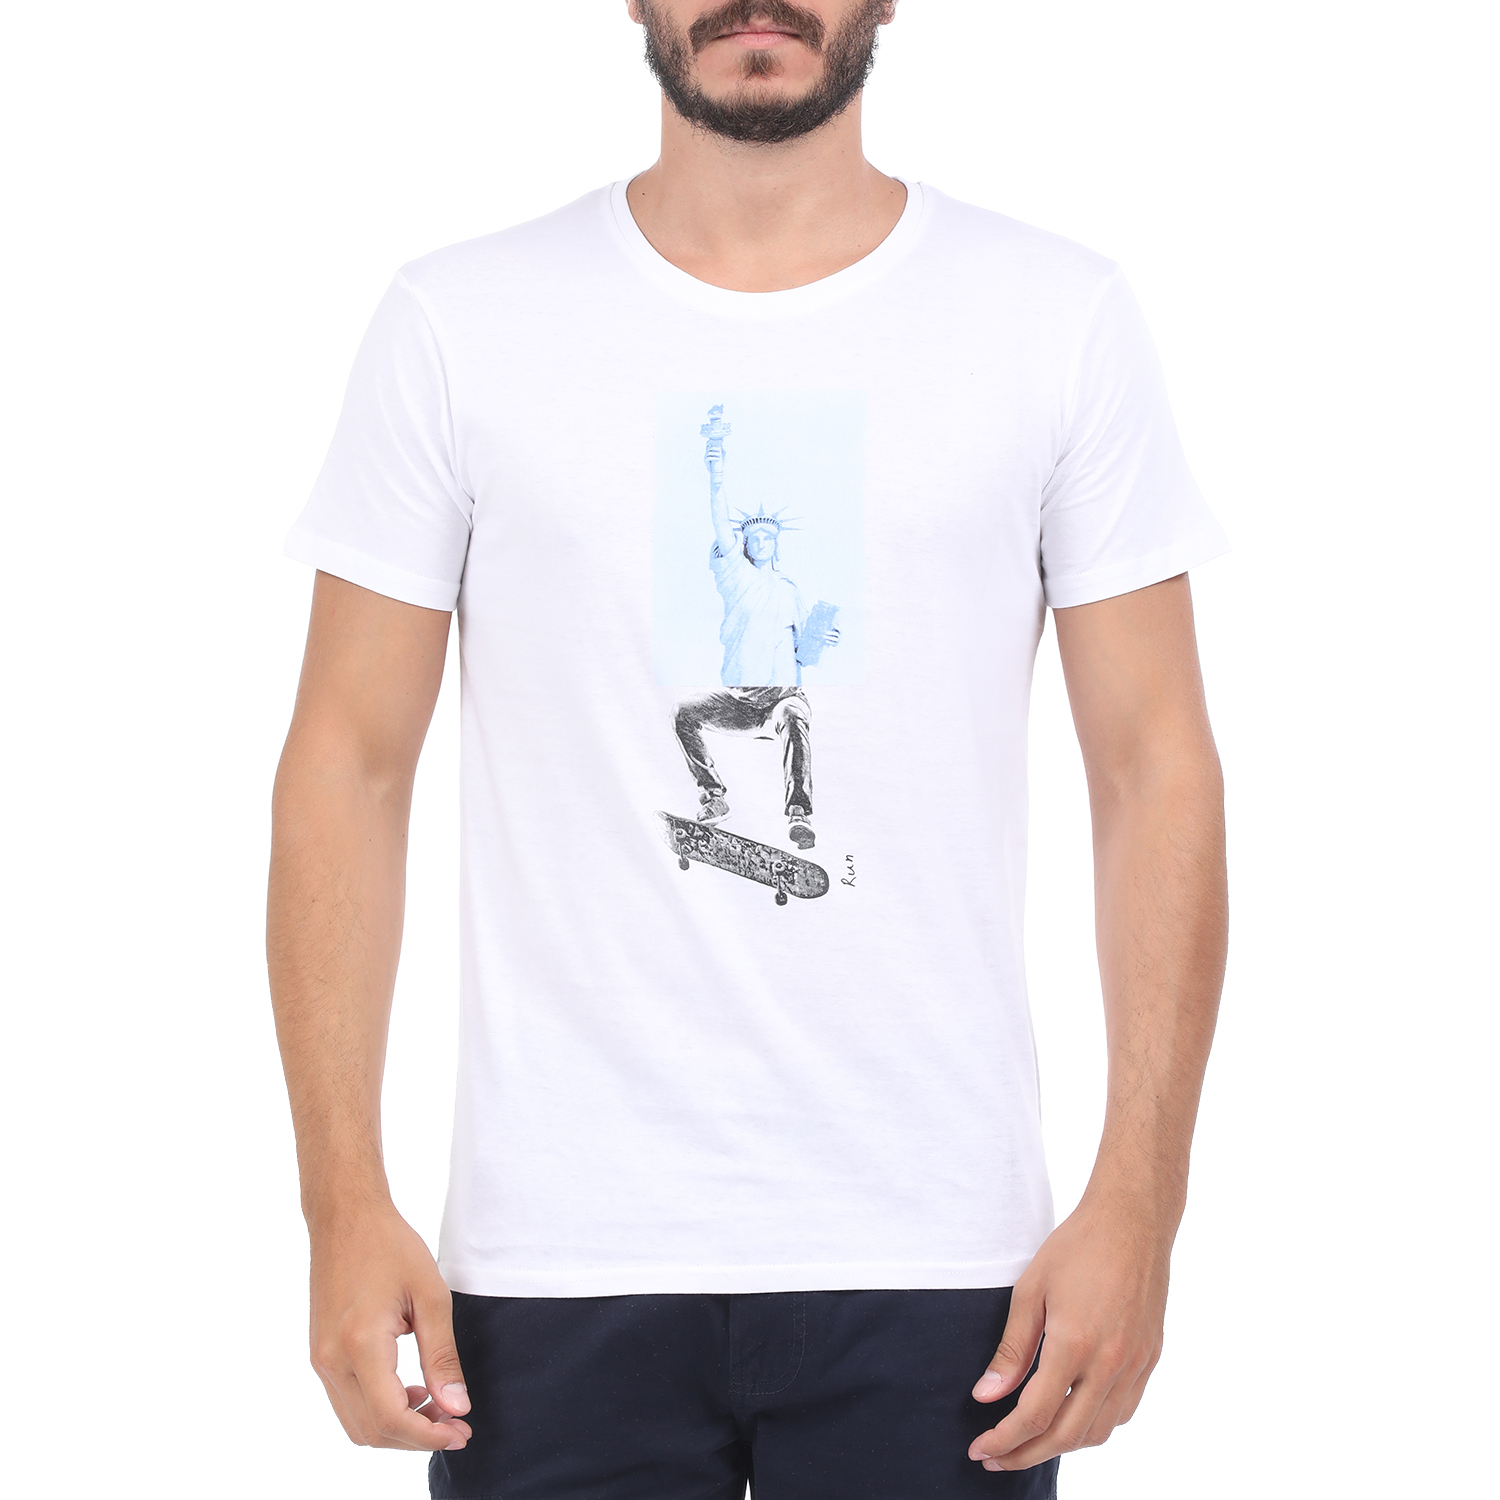 Ανδρικά/Ρούχα/Μπλούζες/Κοντομάνικες RUN - Ανδρική μπλούζα RUN BOX 5 λευκή